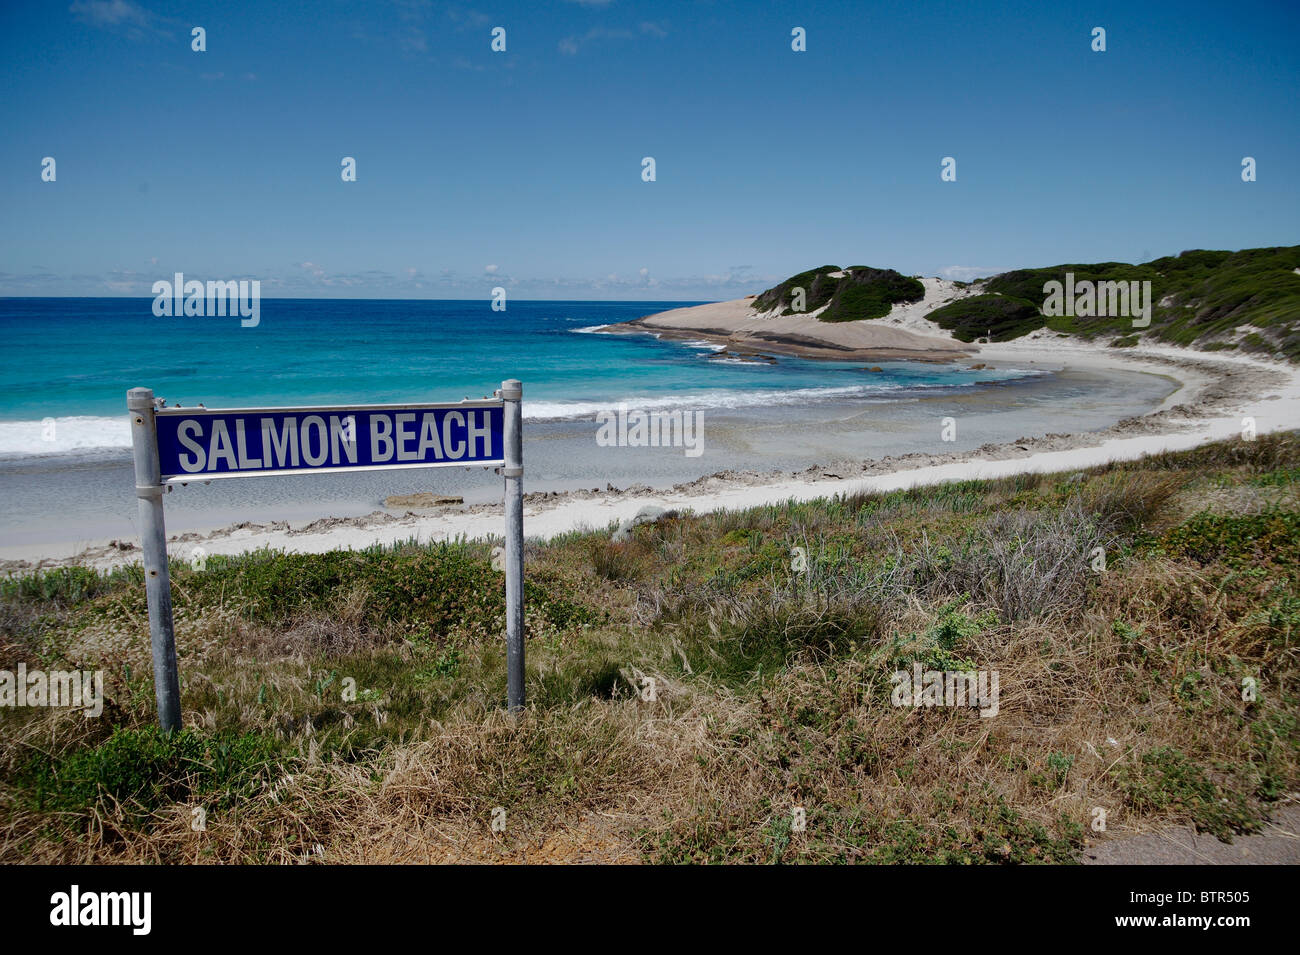 L'Australie, Esperance, vue de Salmon Beach, sign Banque D'Images